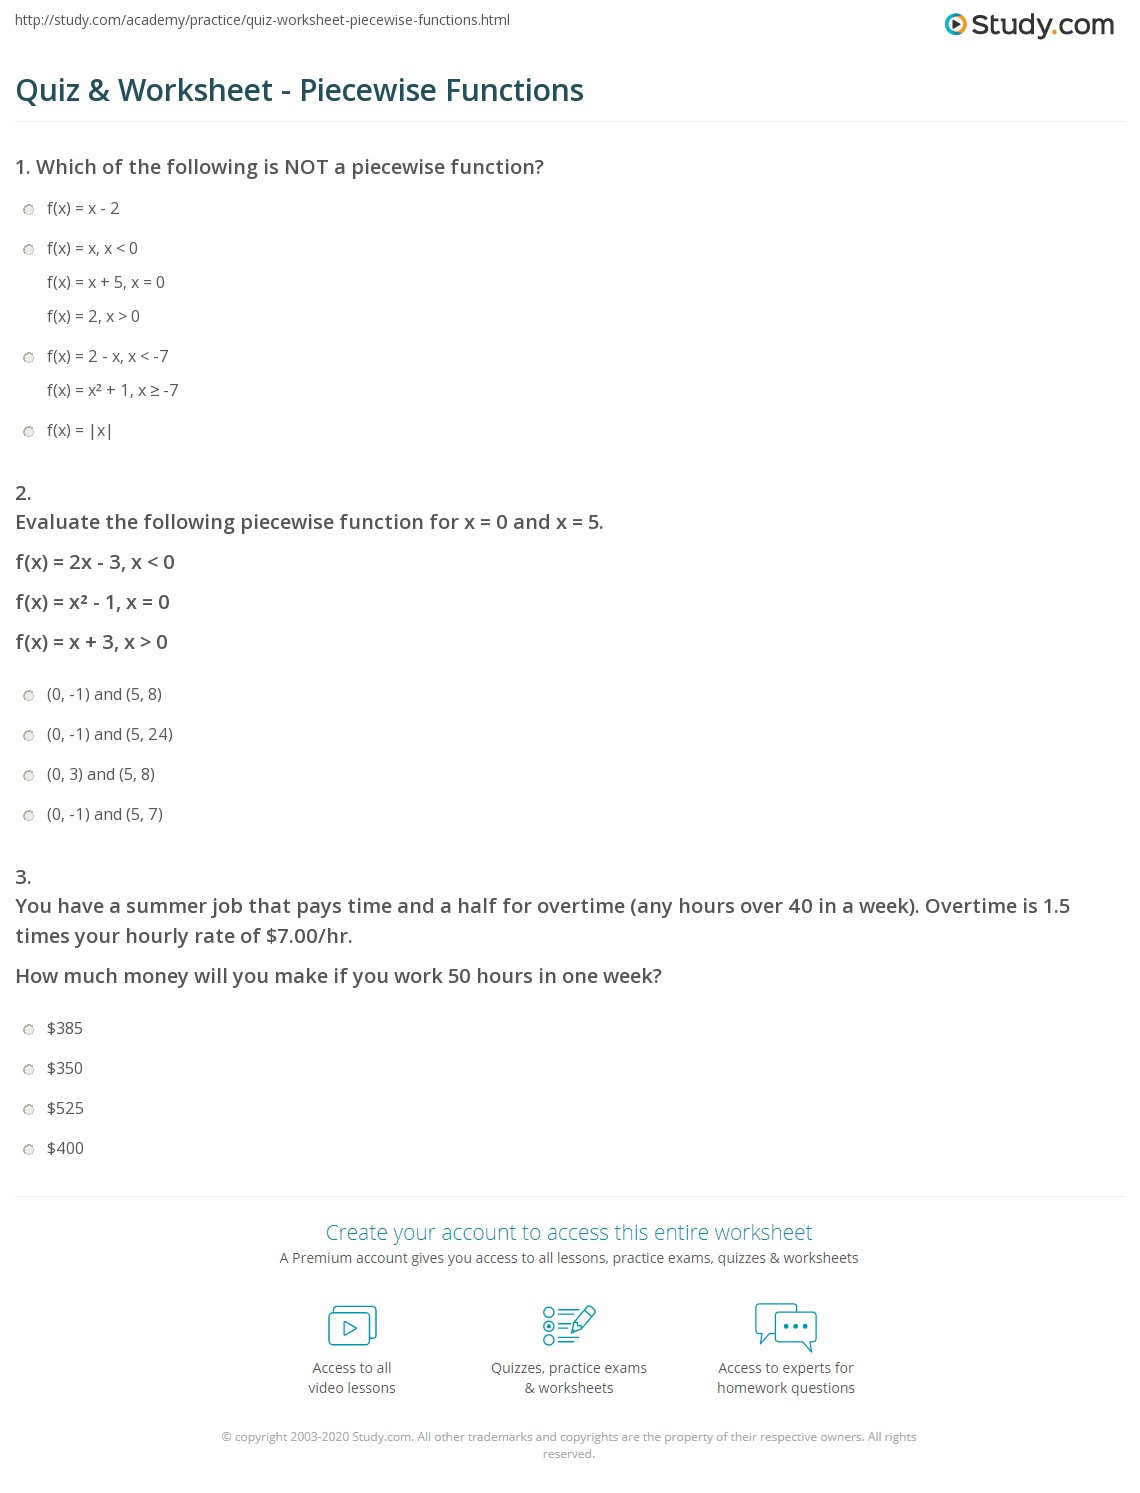 Worksheet Piecewise Functions Algebra 2 Worksheet Piecewise Functions Answers Key